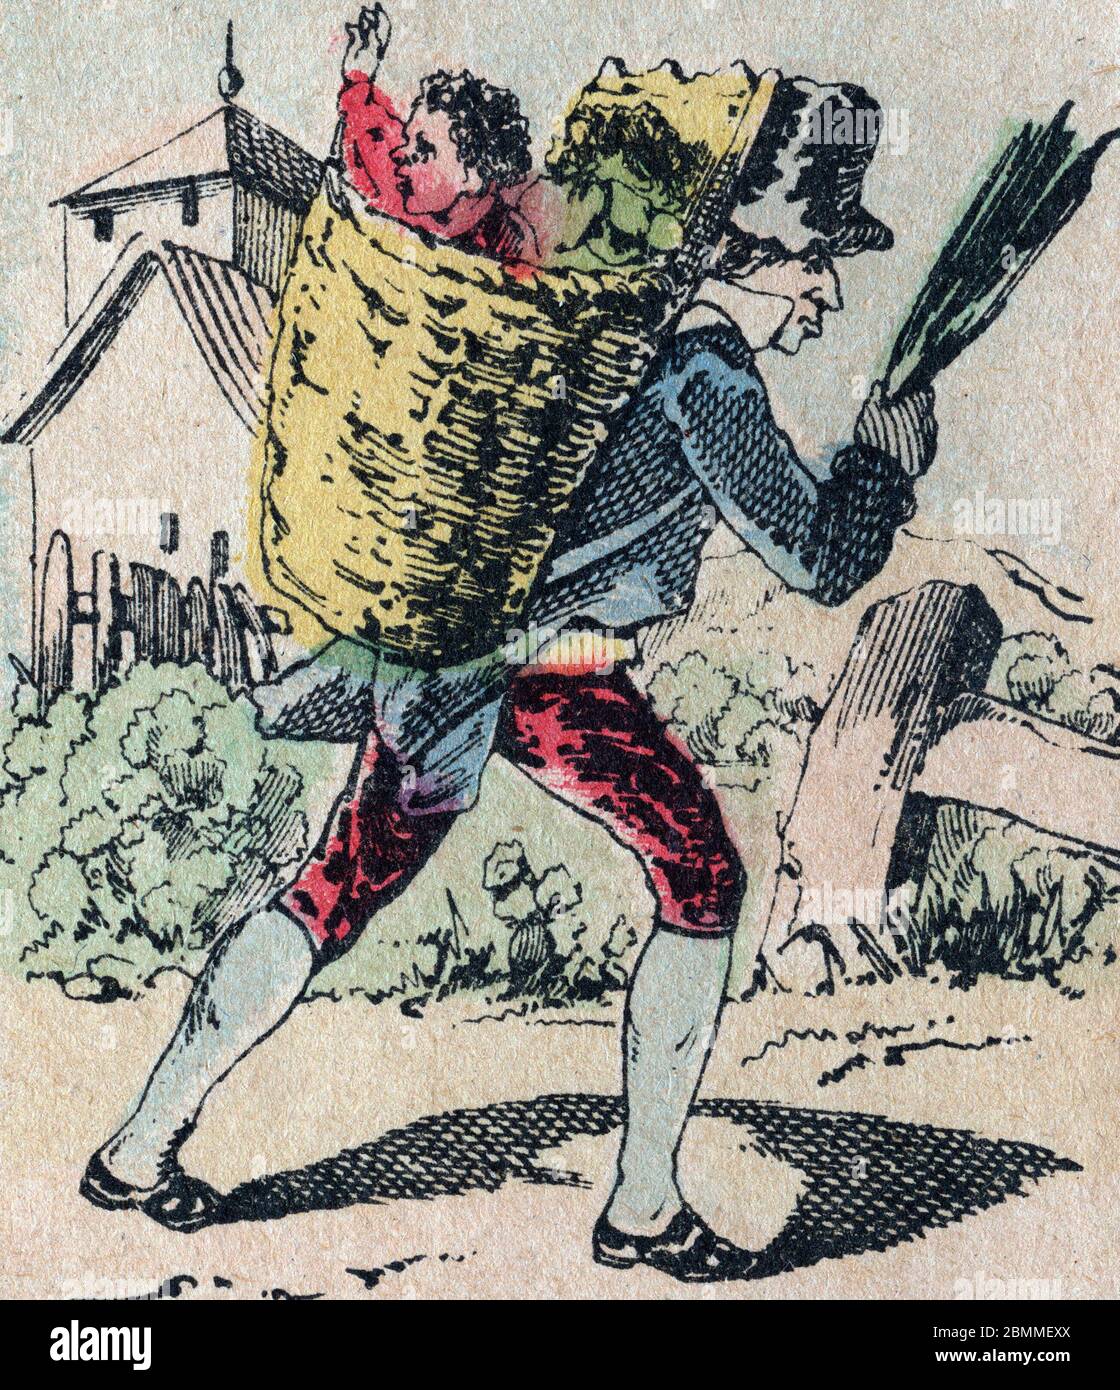 Le pere fouettard, personnage Legendaire du Folklore, punissant les enfants pas sages avec son fouet, les emmene dans sa hotte, image d'Epinal, 19eme Stockfoto